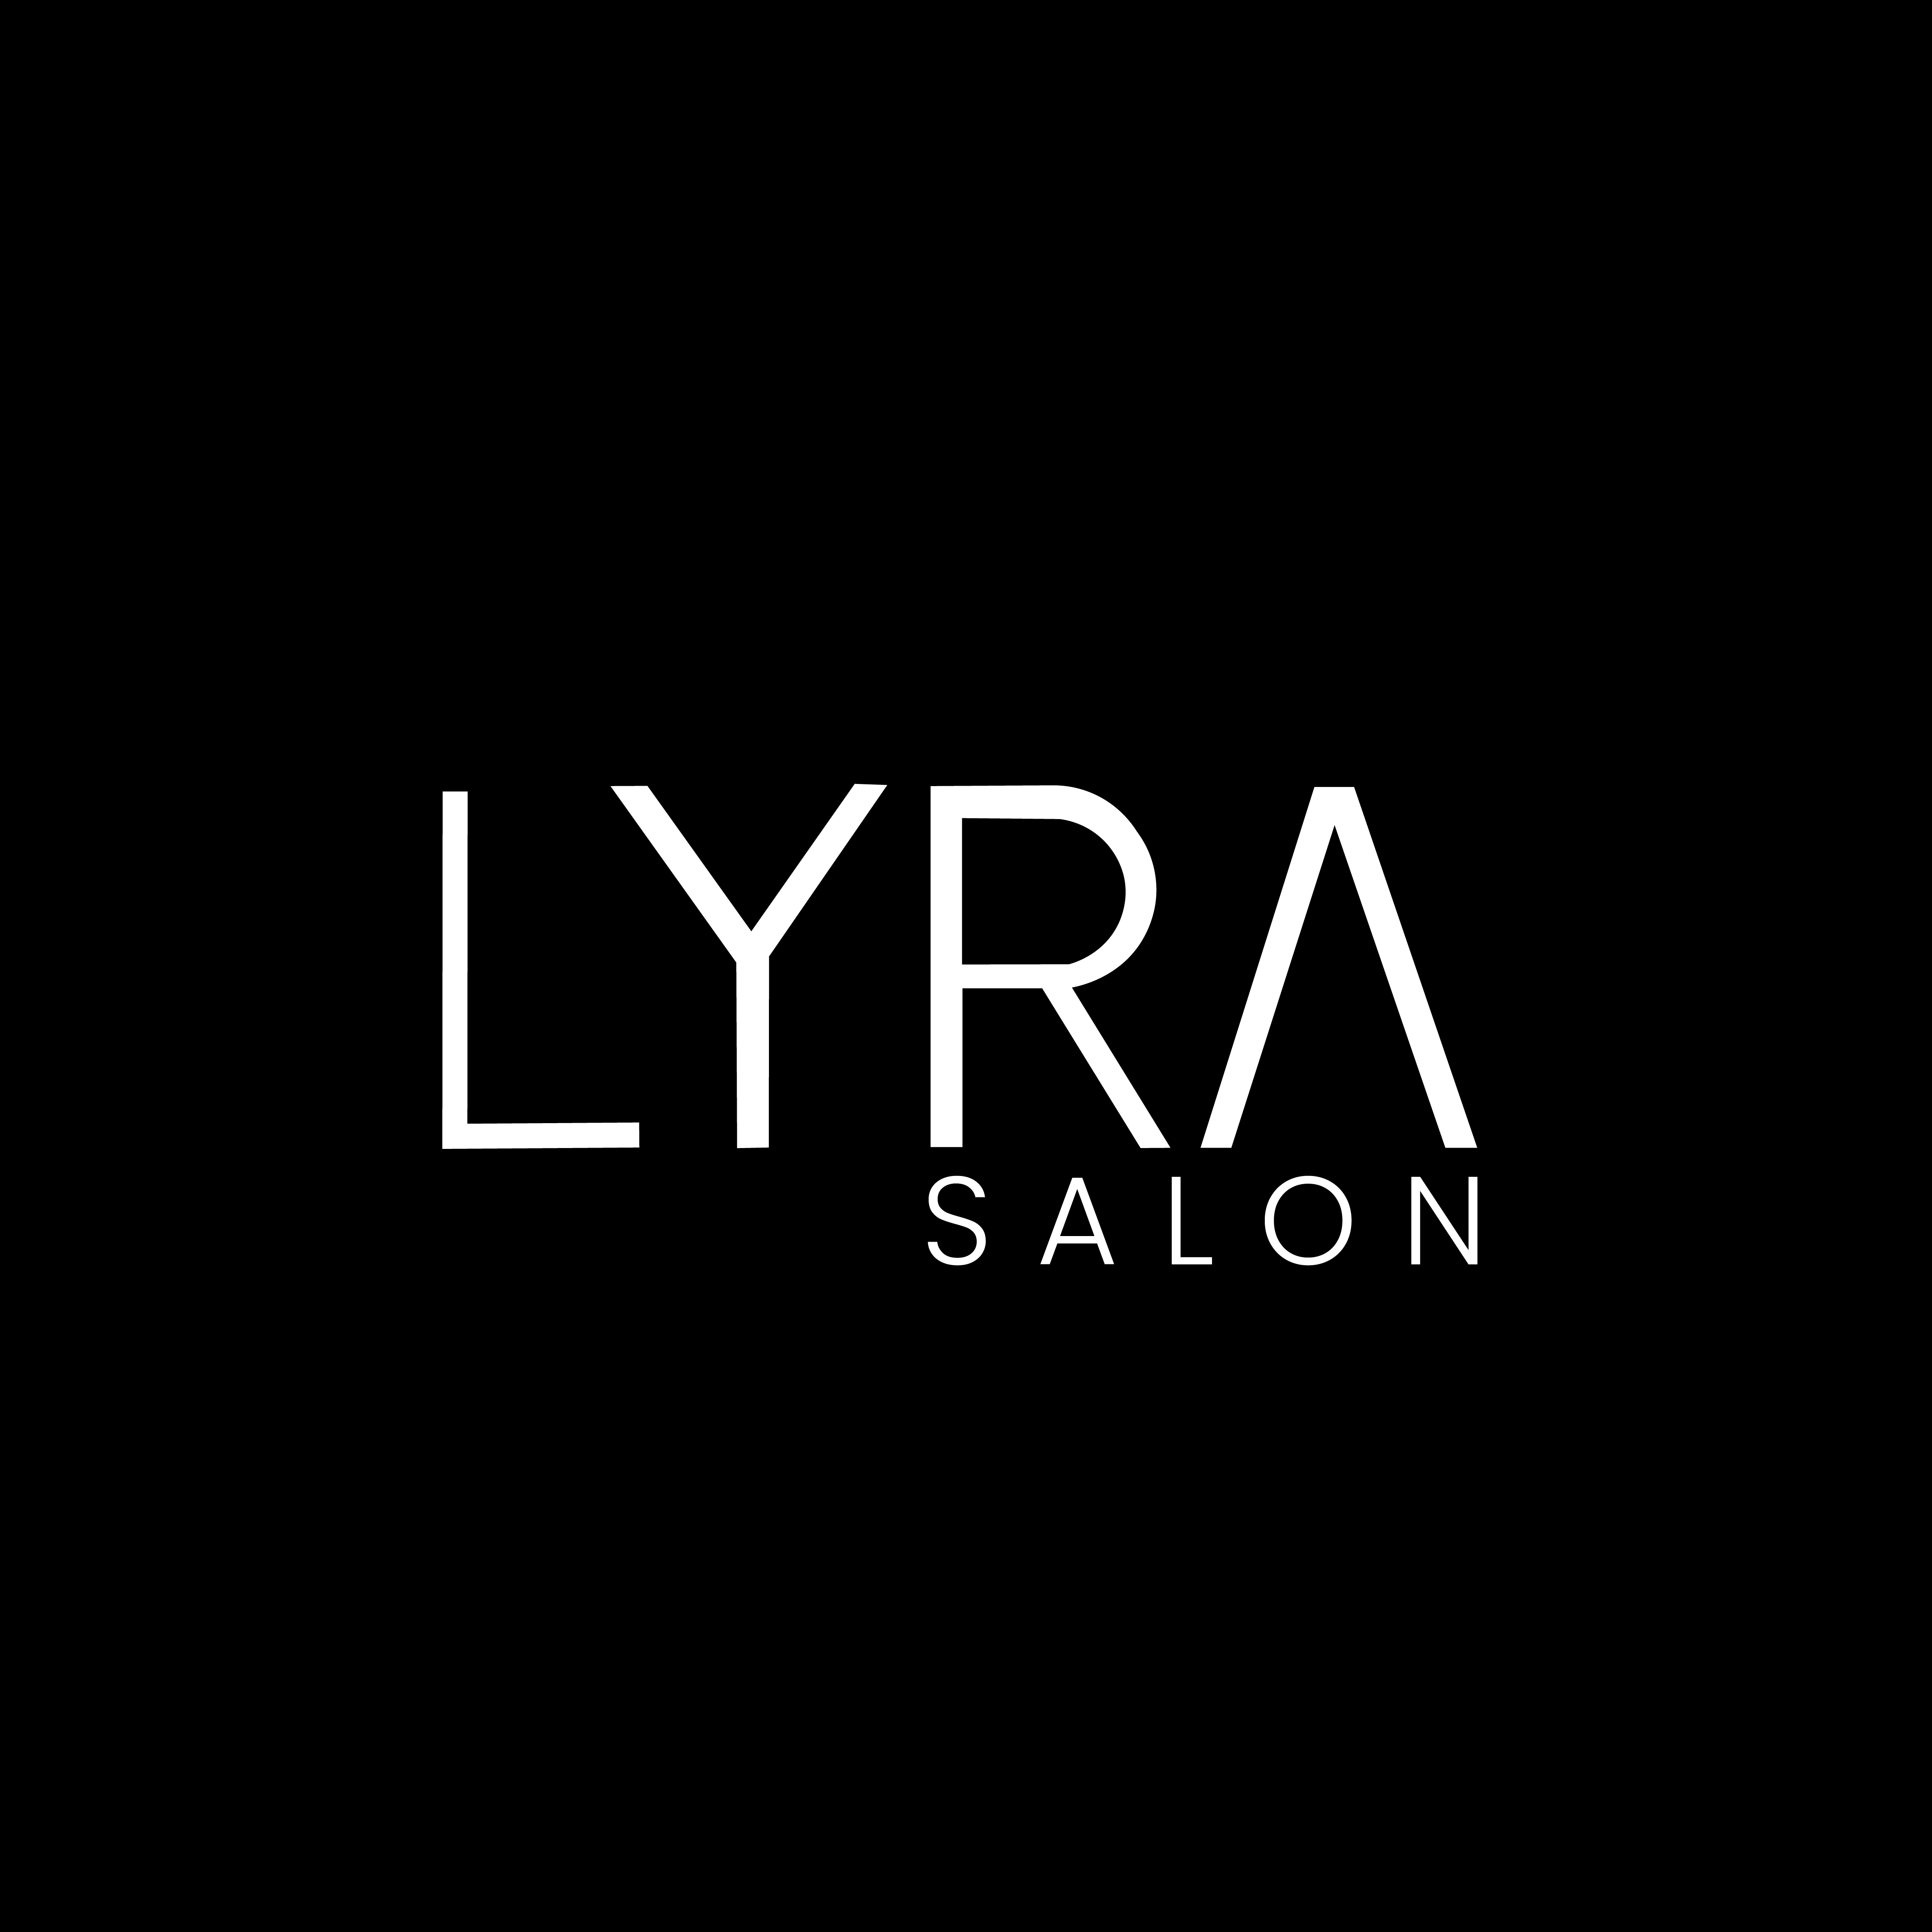 Lyra Salon